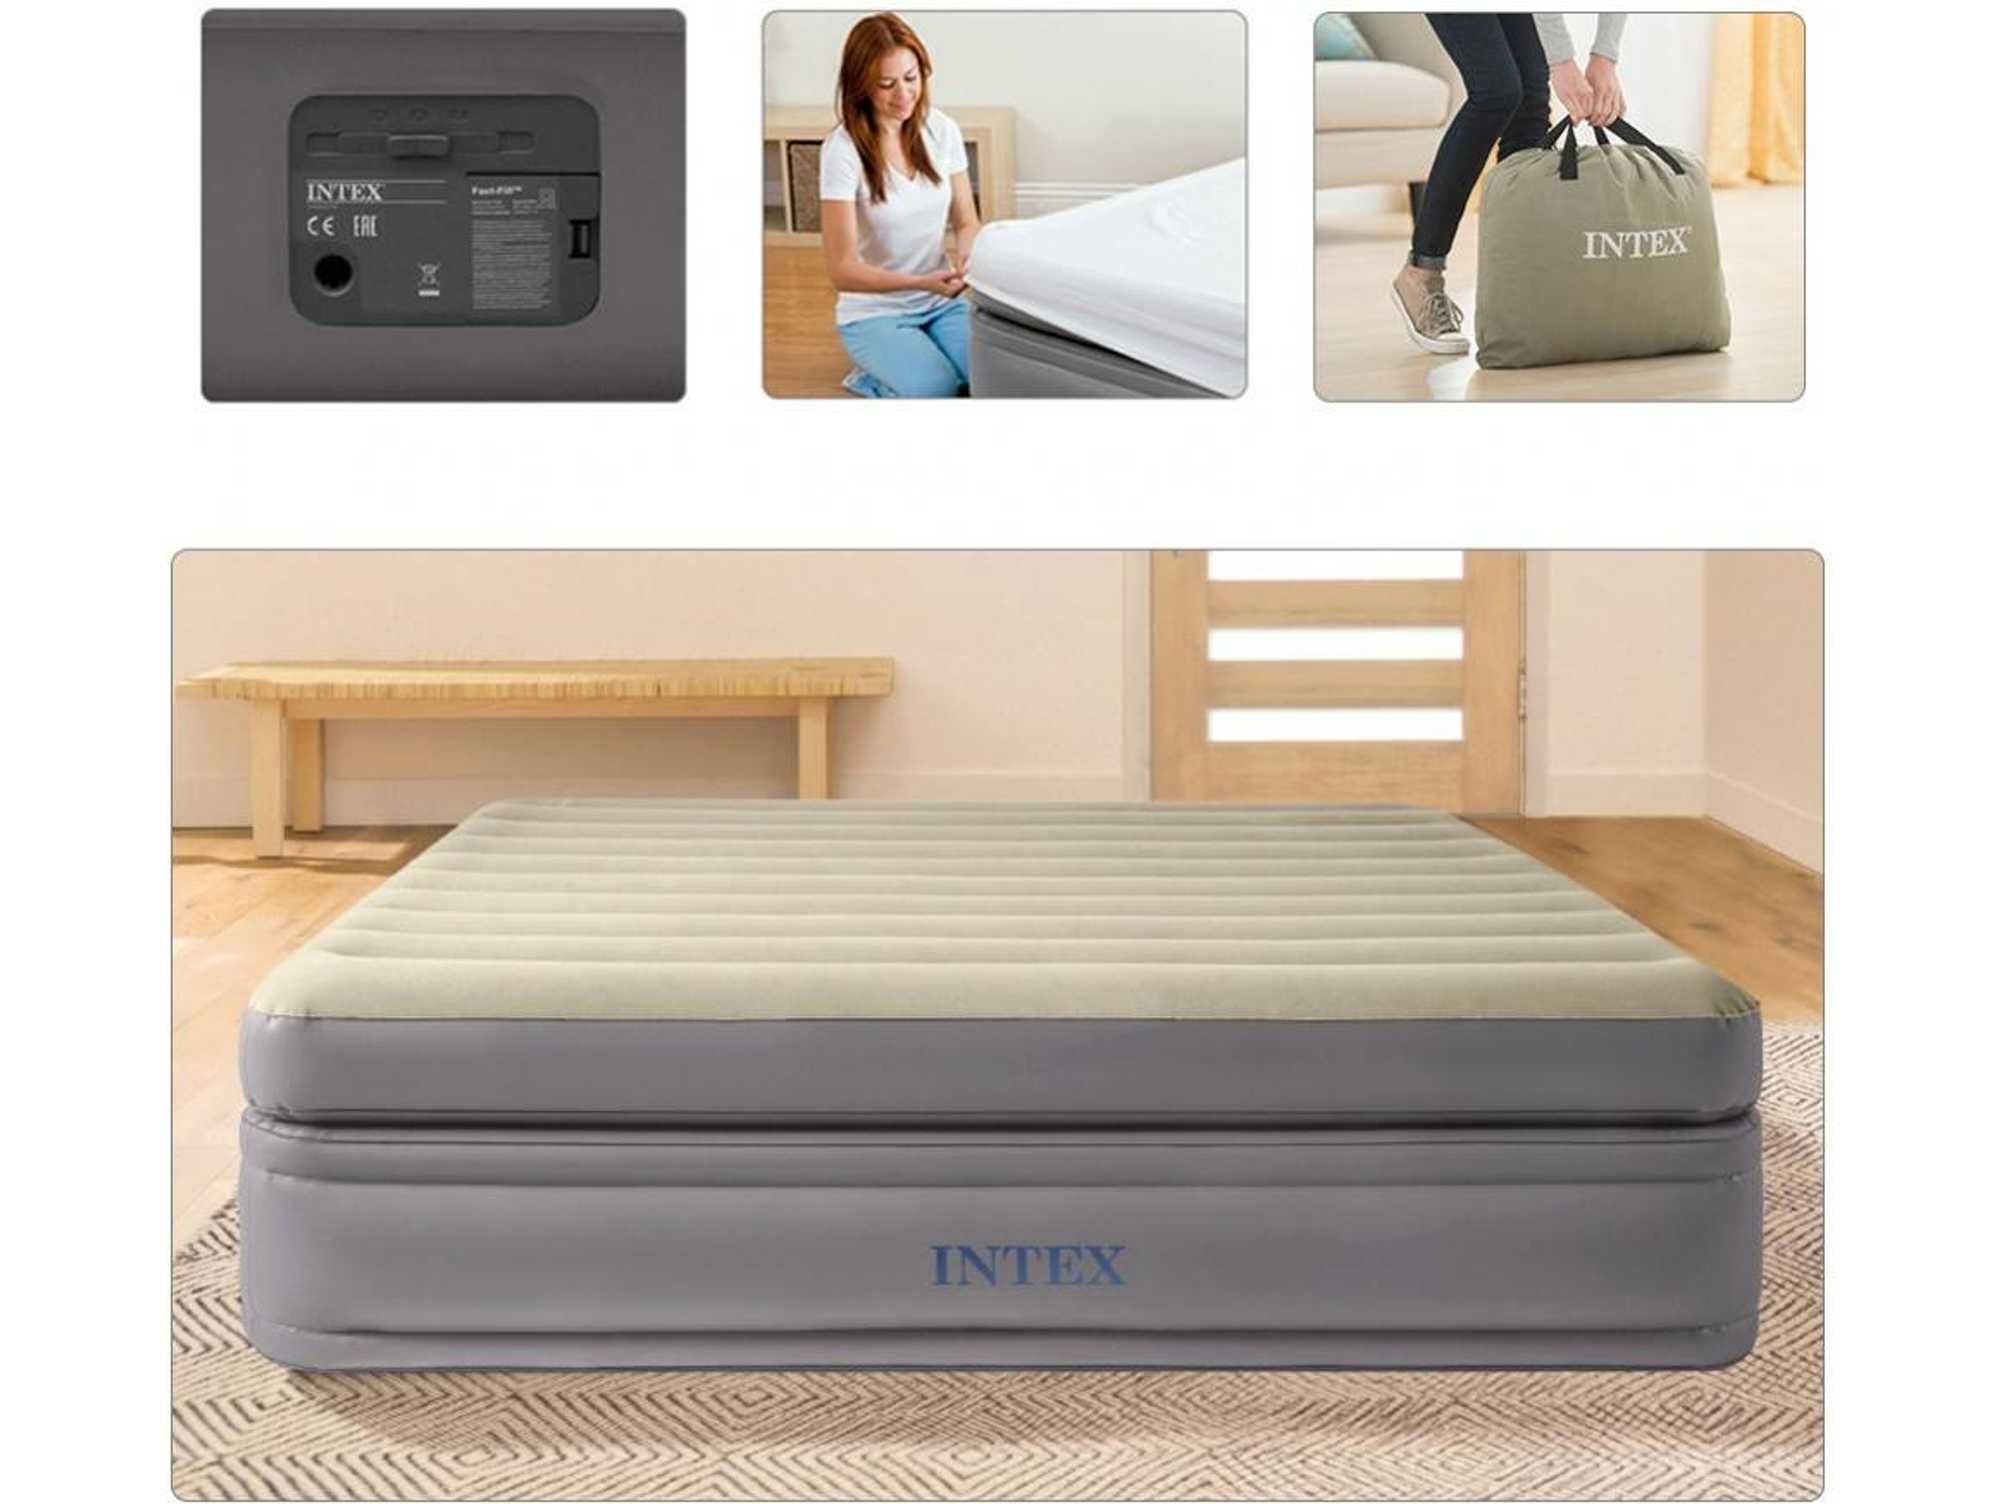 Кровать надувной-191x99x51 см. Intex. Доставка бесплатно